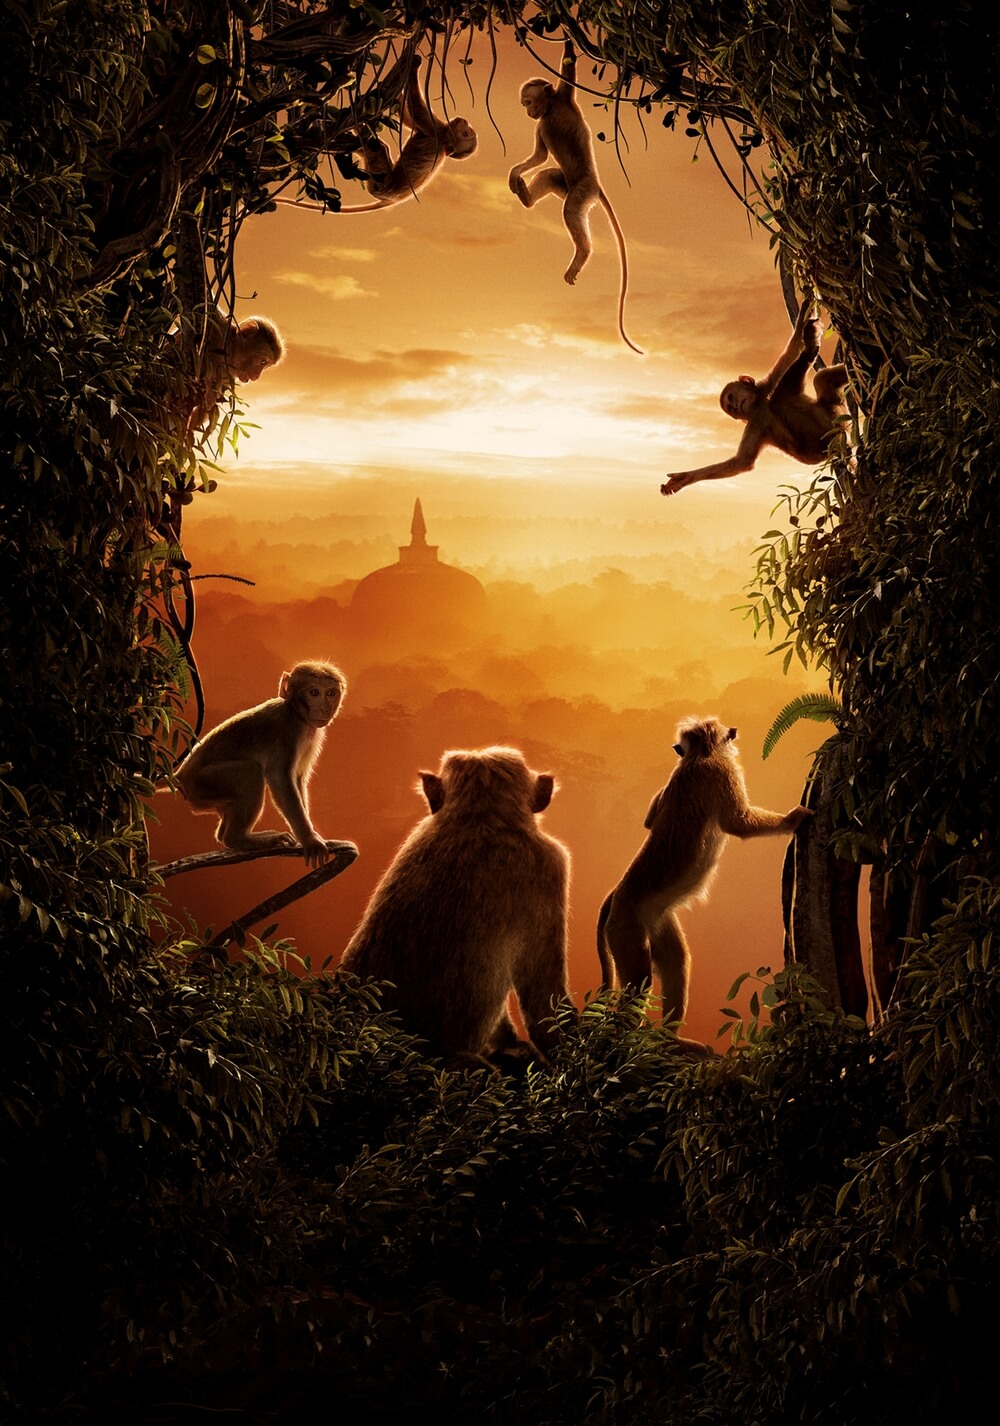 پادشاهی میمون ها (Monkey Kingdom)